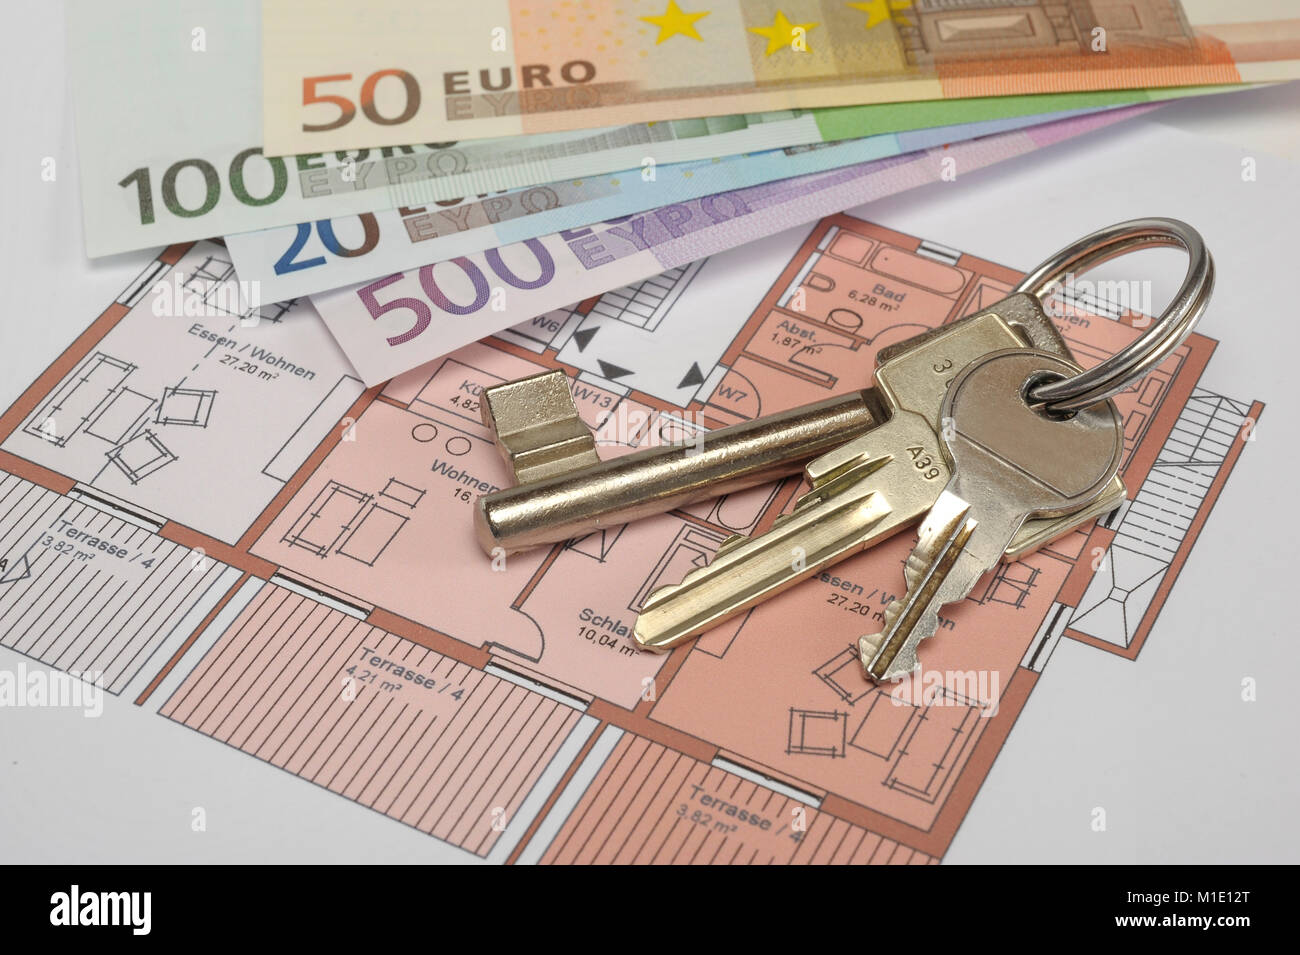 Wohnungsschlüssel und Euro Geldscheine als Miete für Wohnung Stock Photo